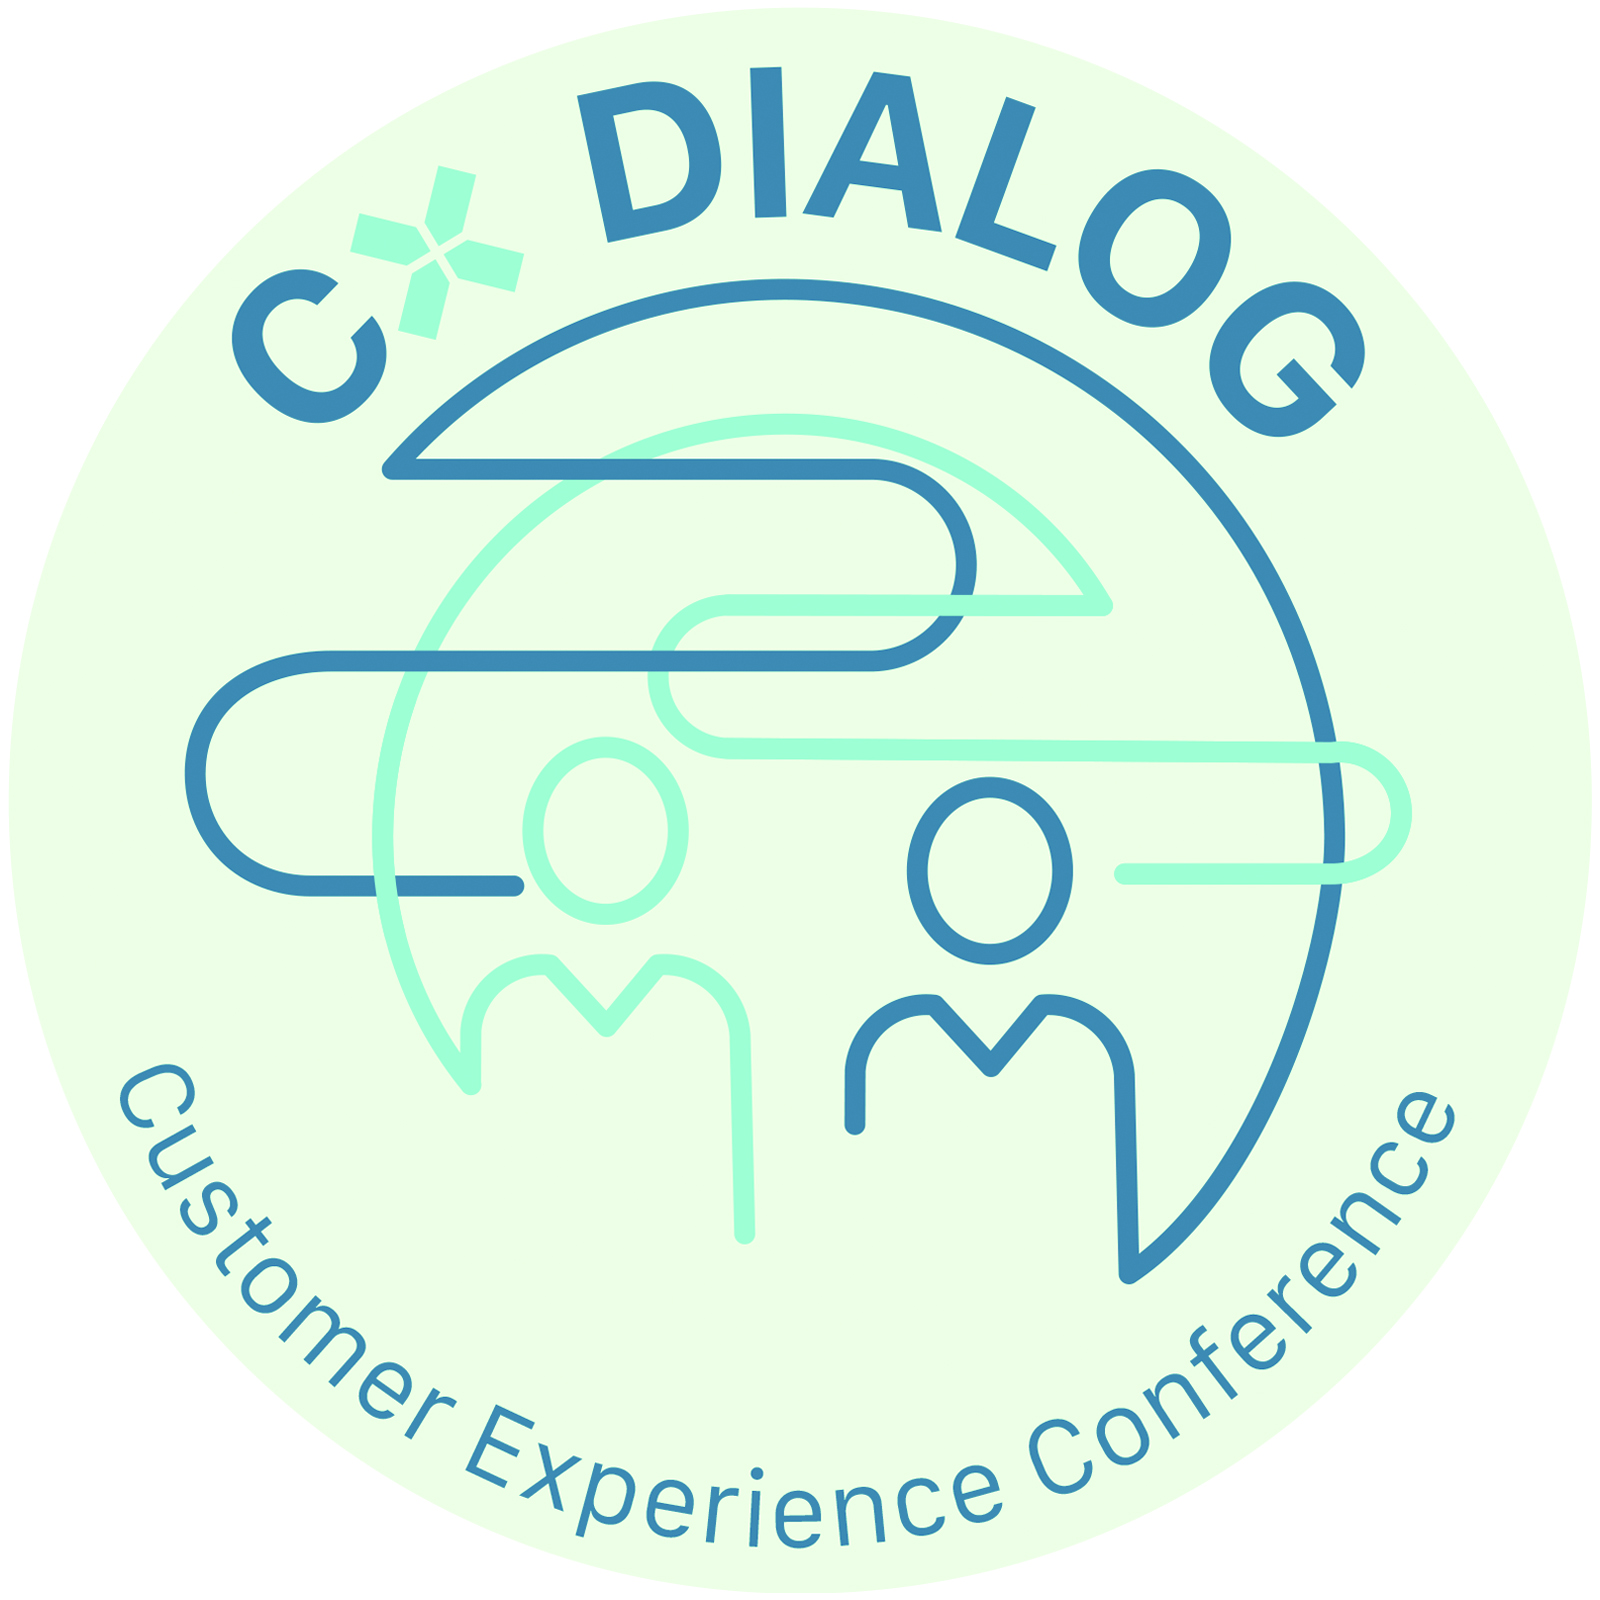 CX Dialog